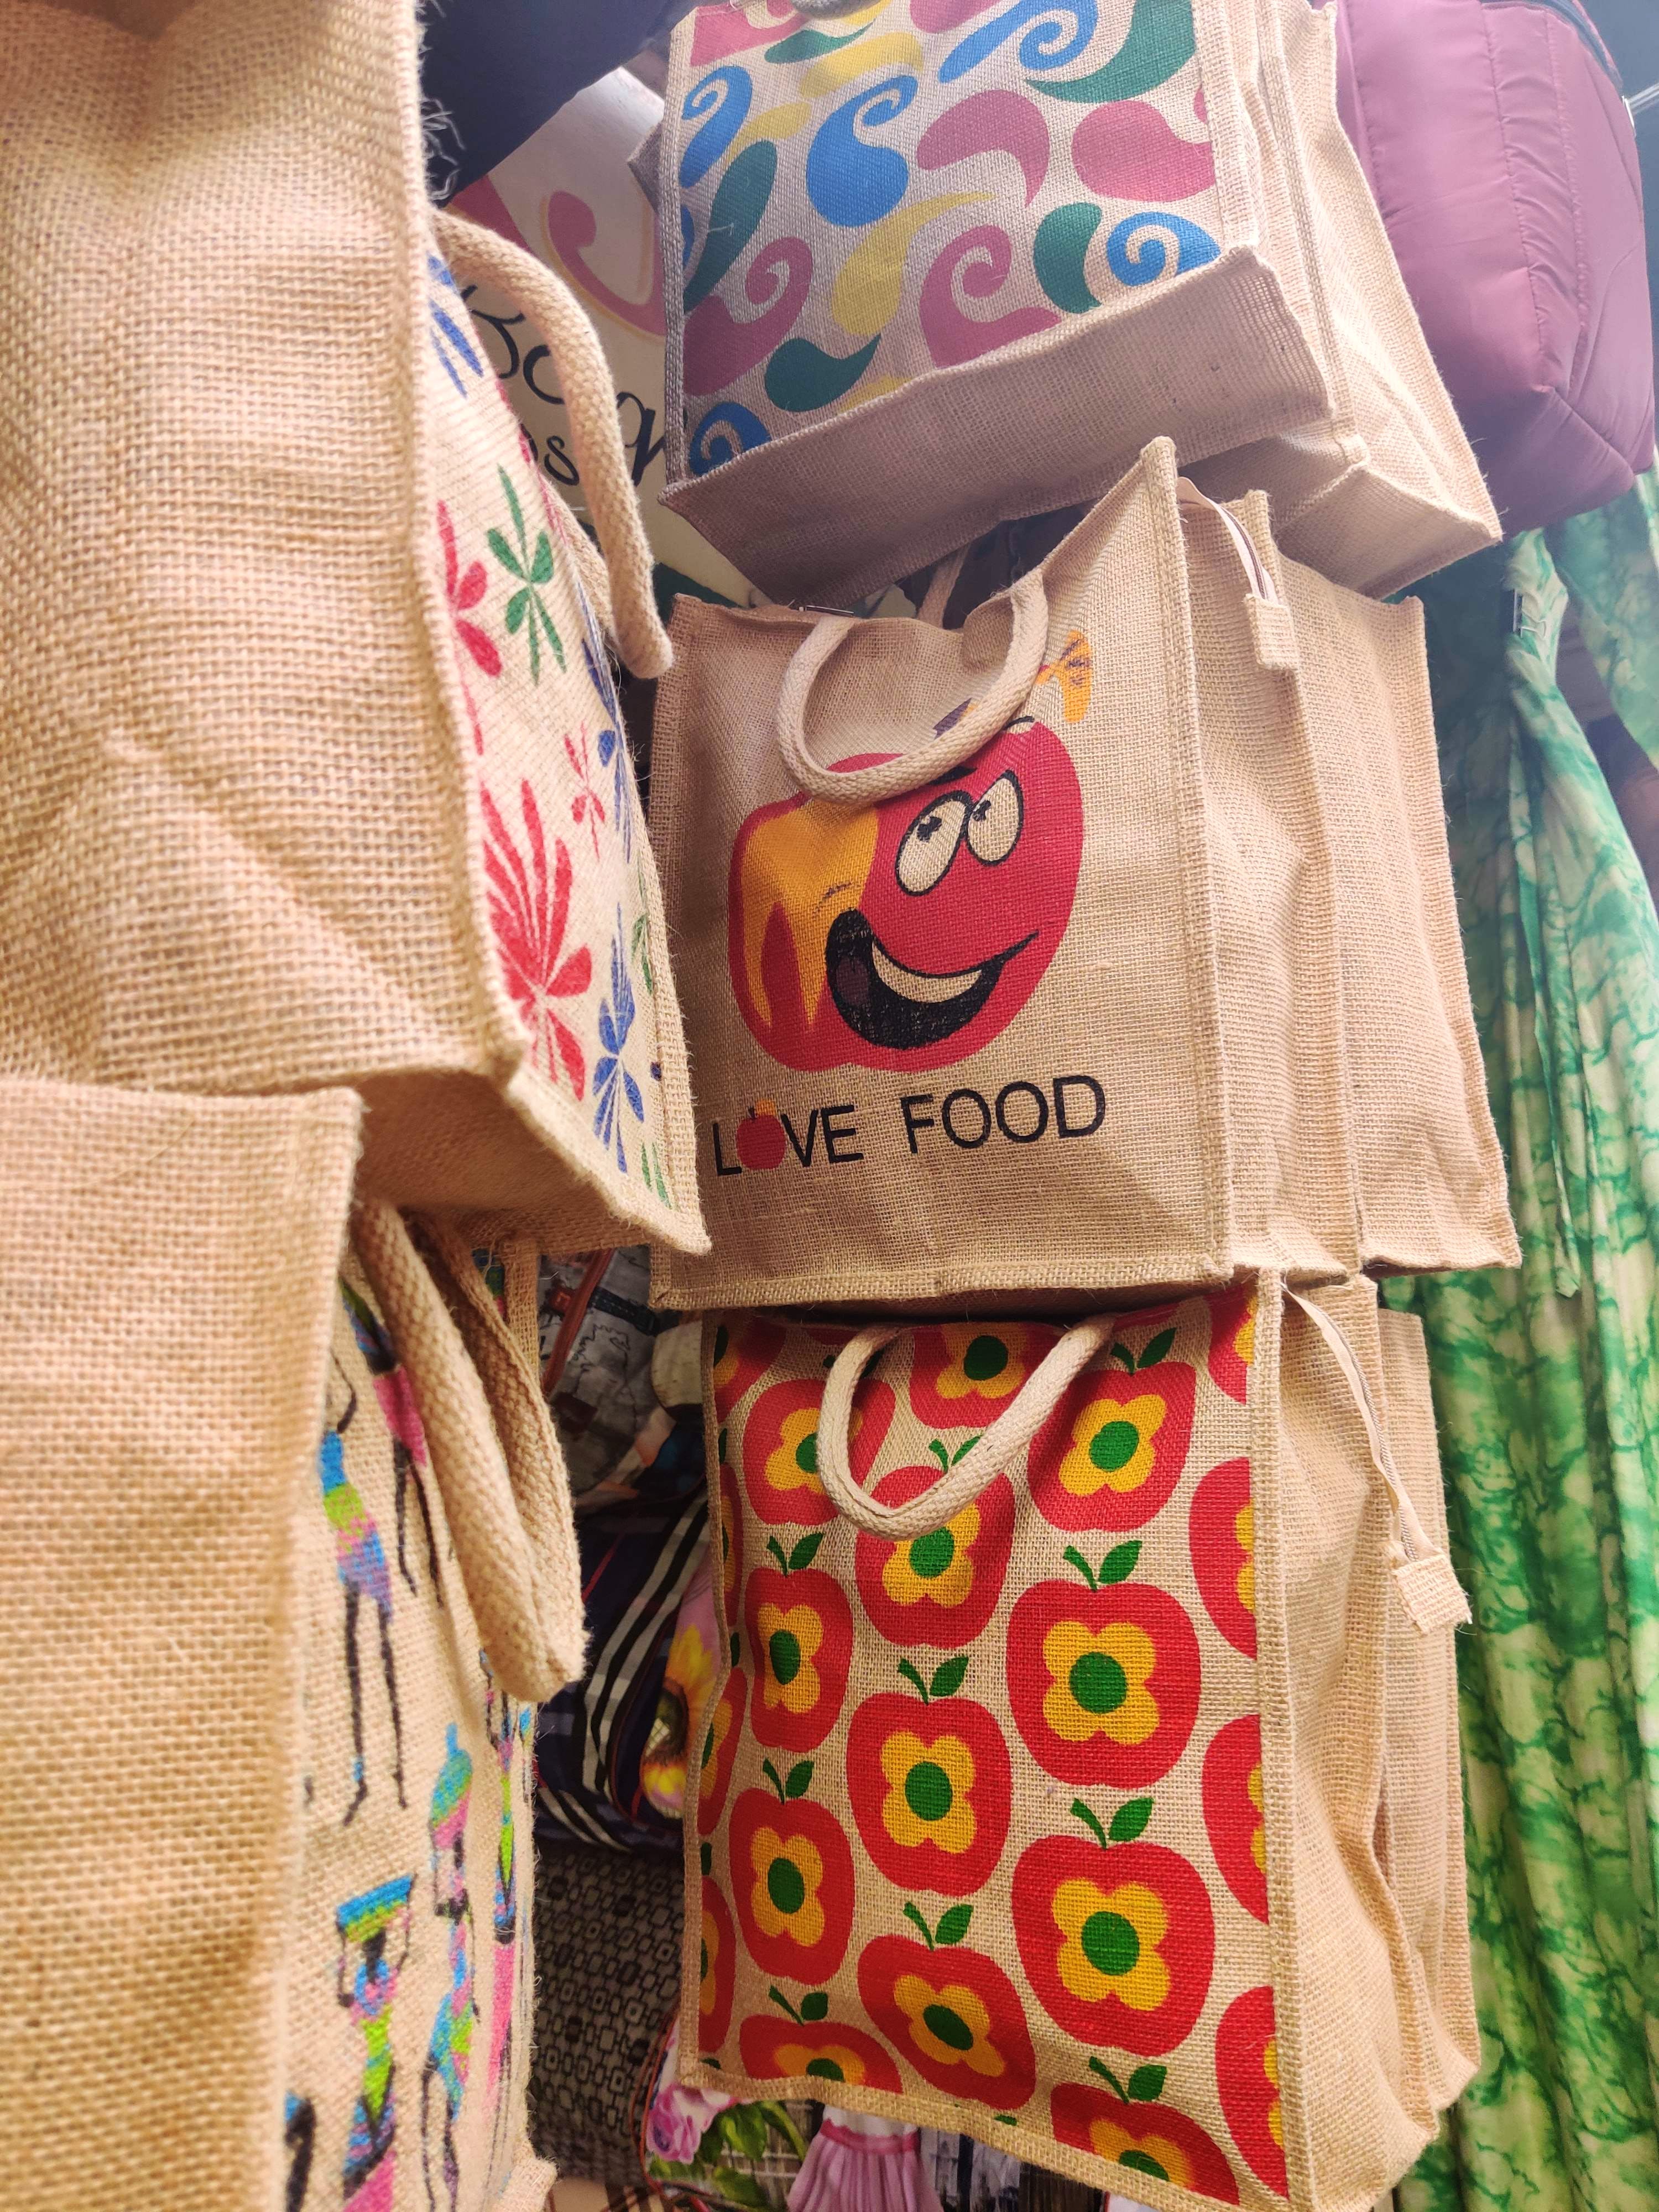 Jute Bags | Sign Makers in Coimbatore, India